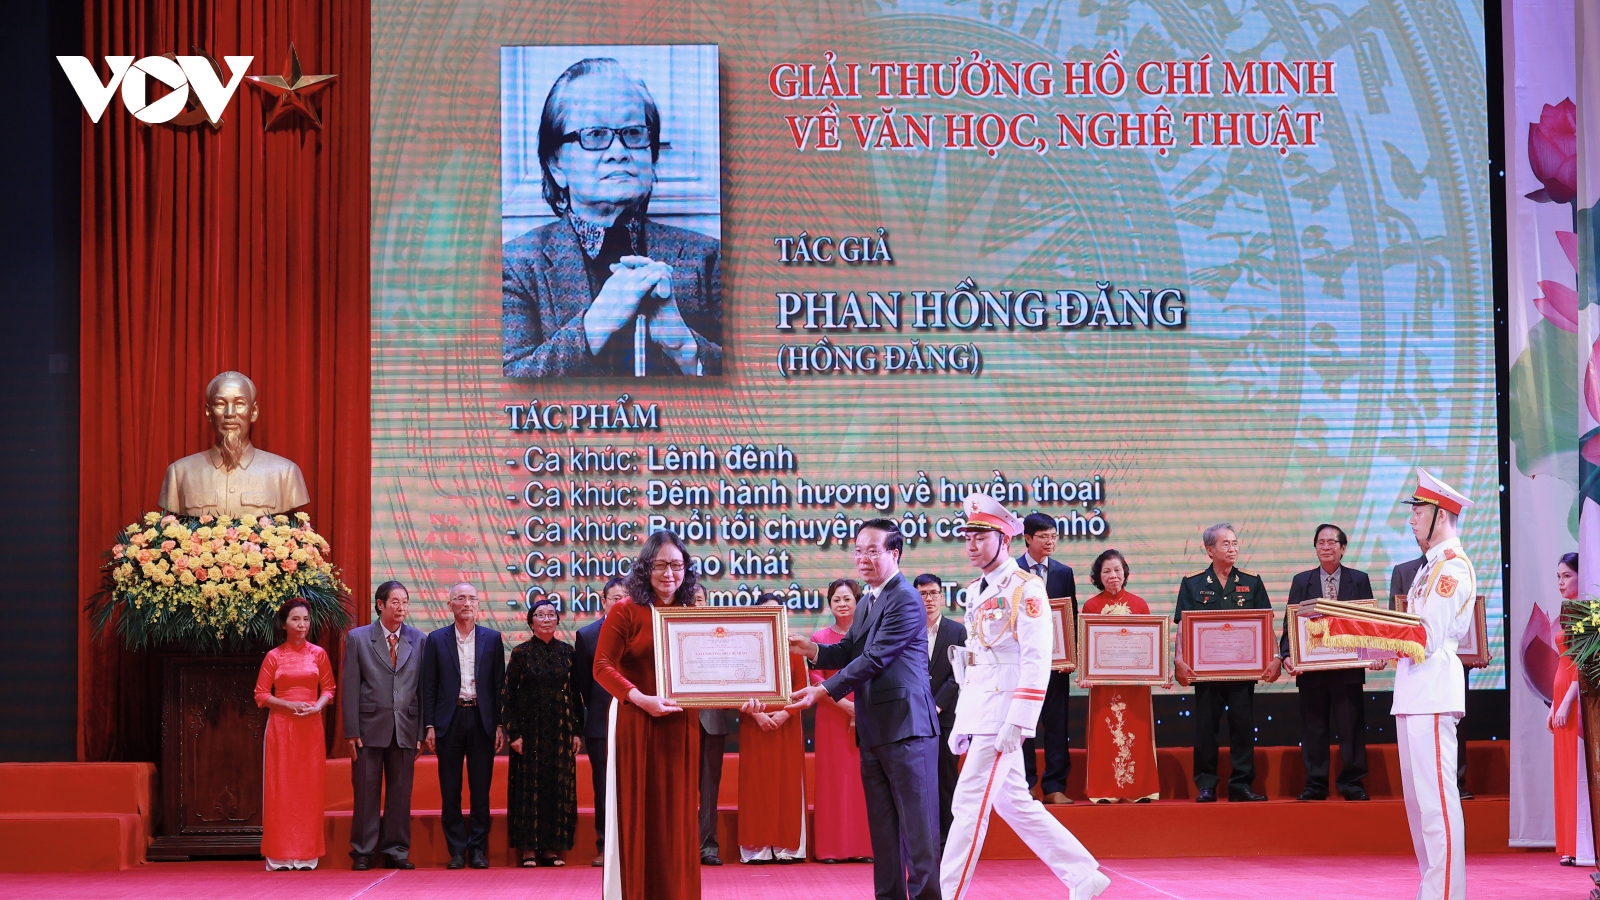 Toàn cảnh lễ trao Giải thưởng Hồ Chí Minh, Giải thưởng Nhà nước về VHNT